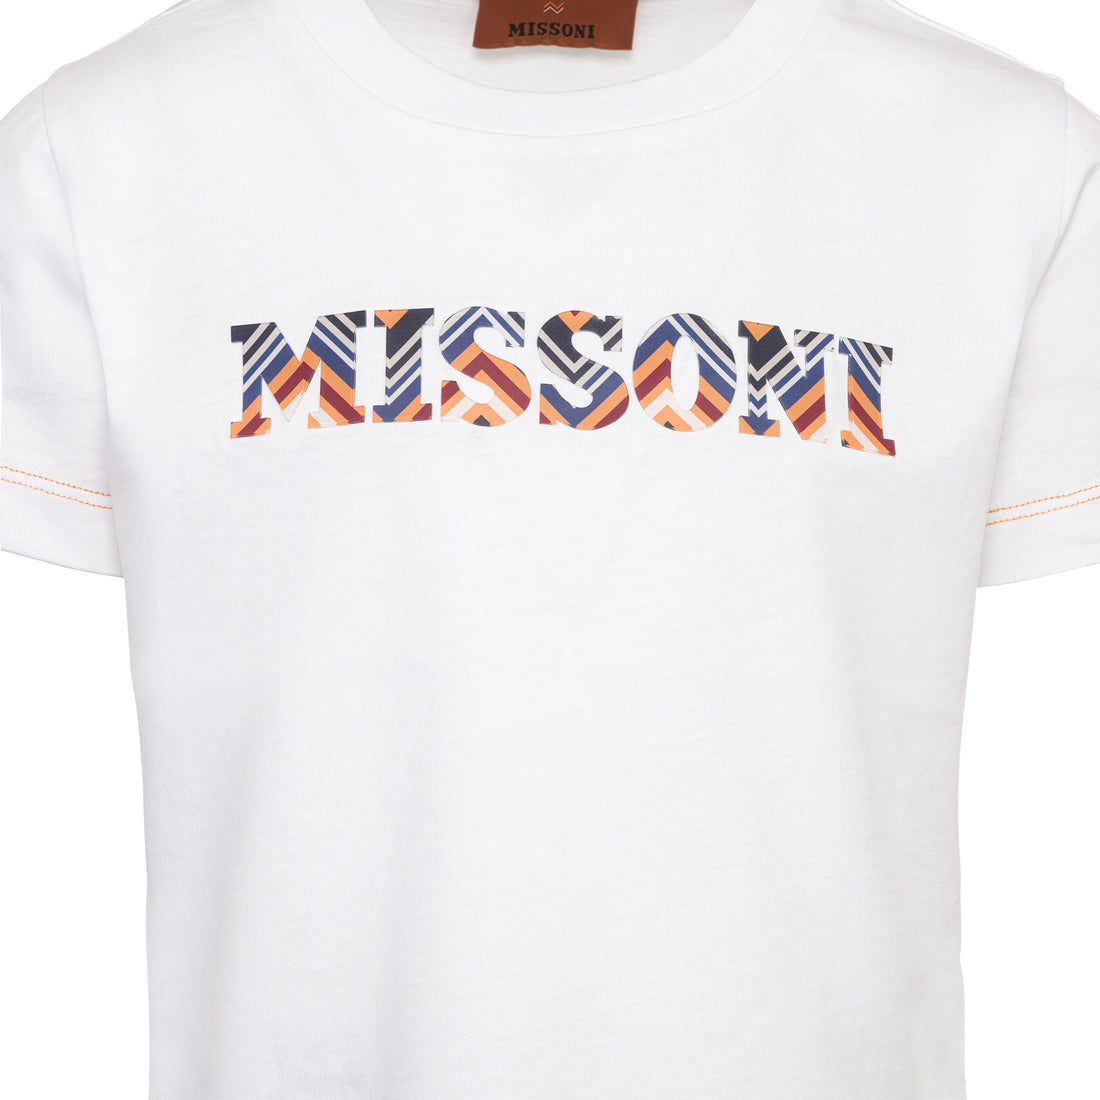 Missoni Cotton T-Shirt/Top | Schools Out